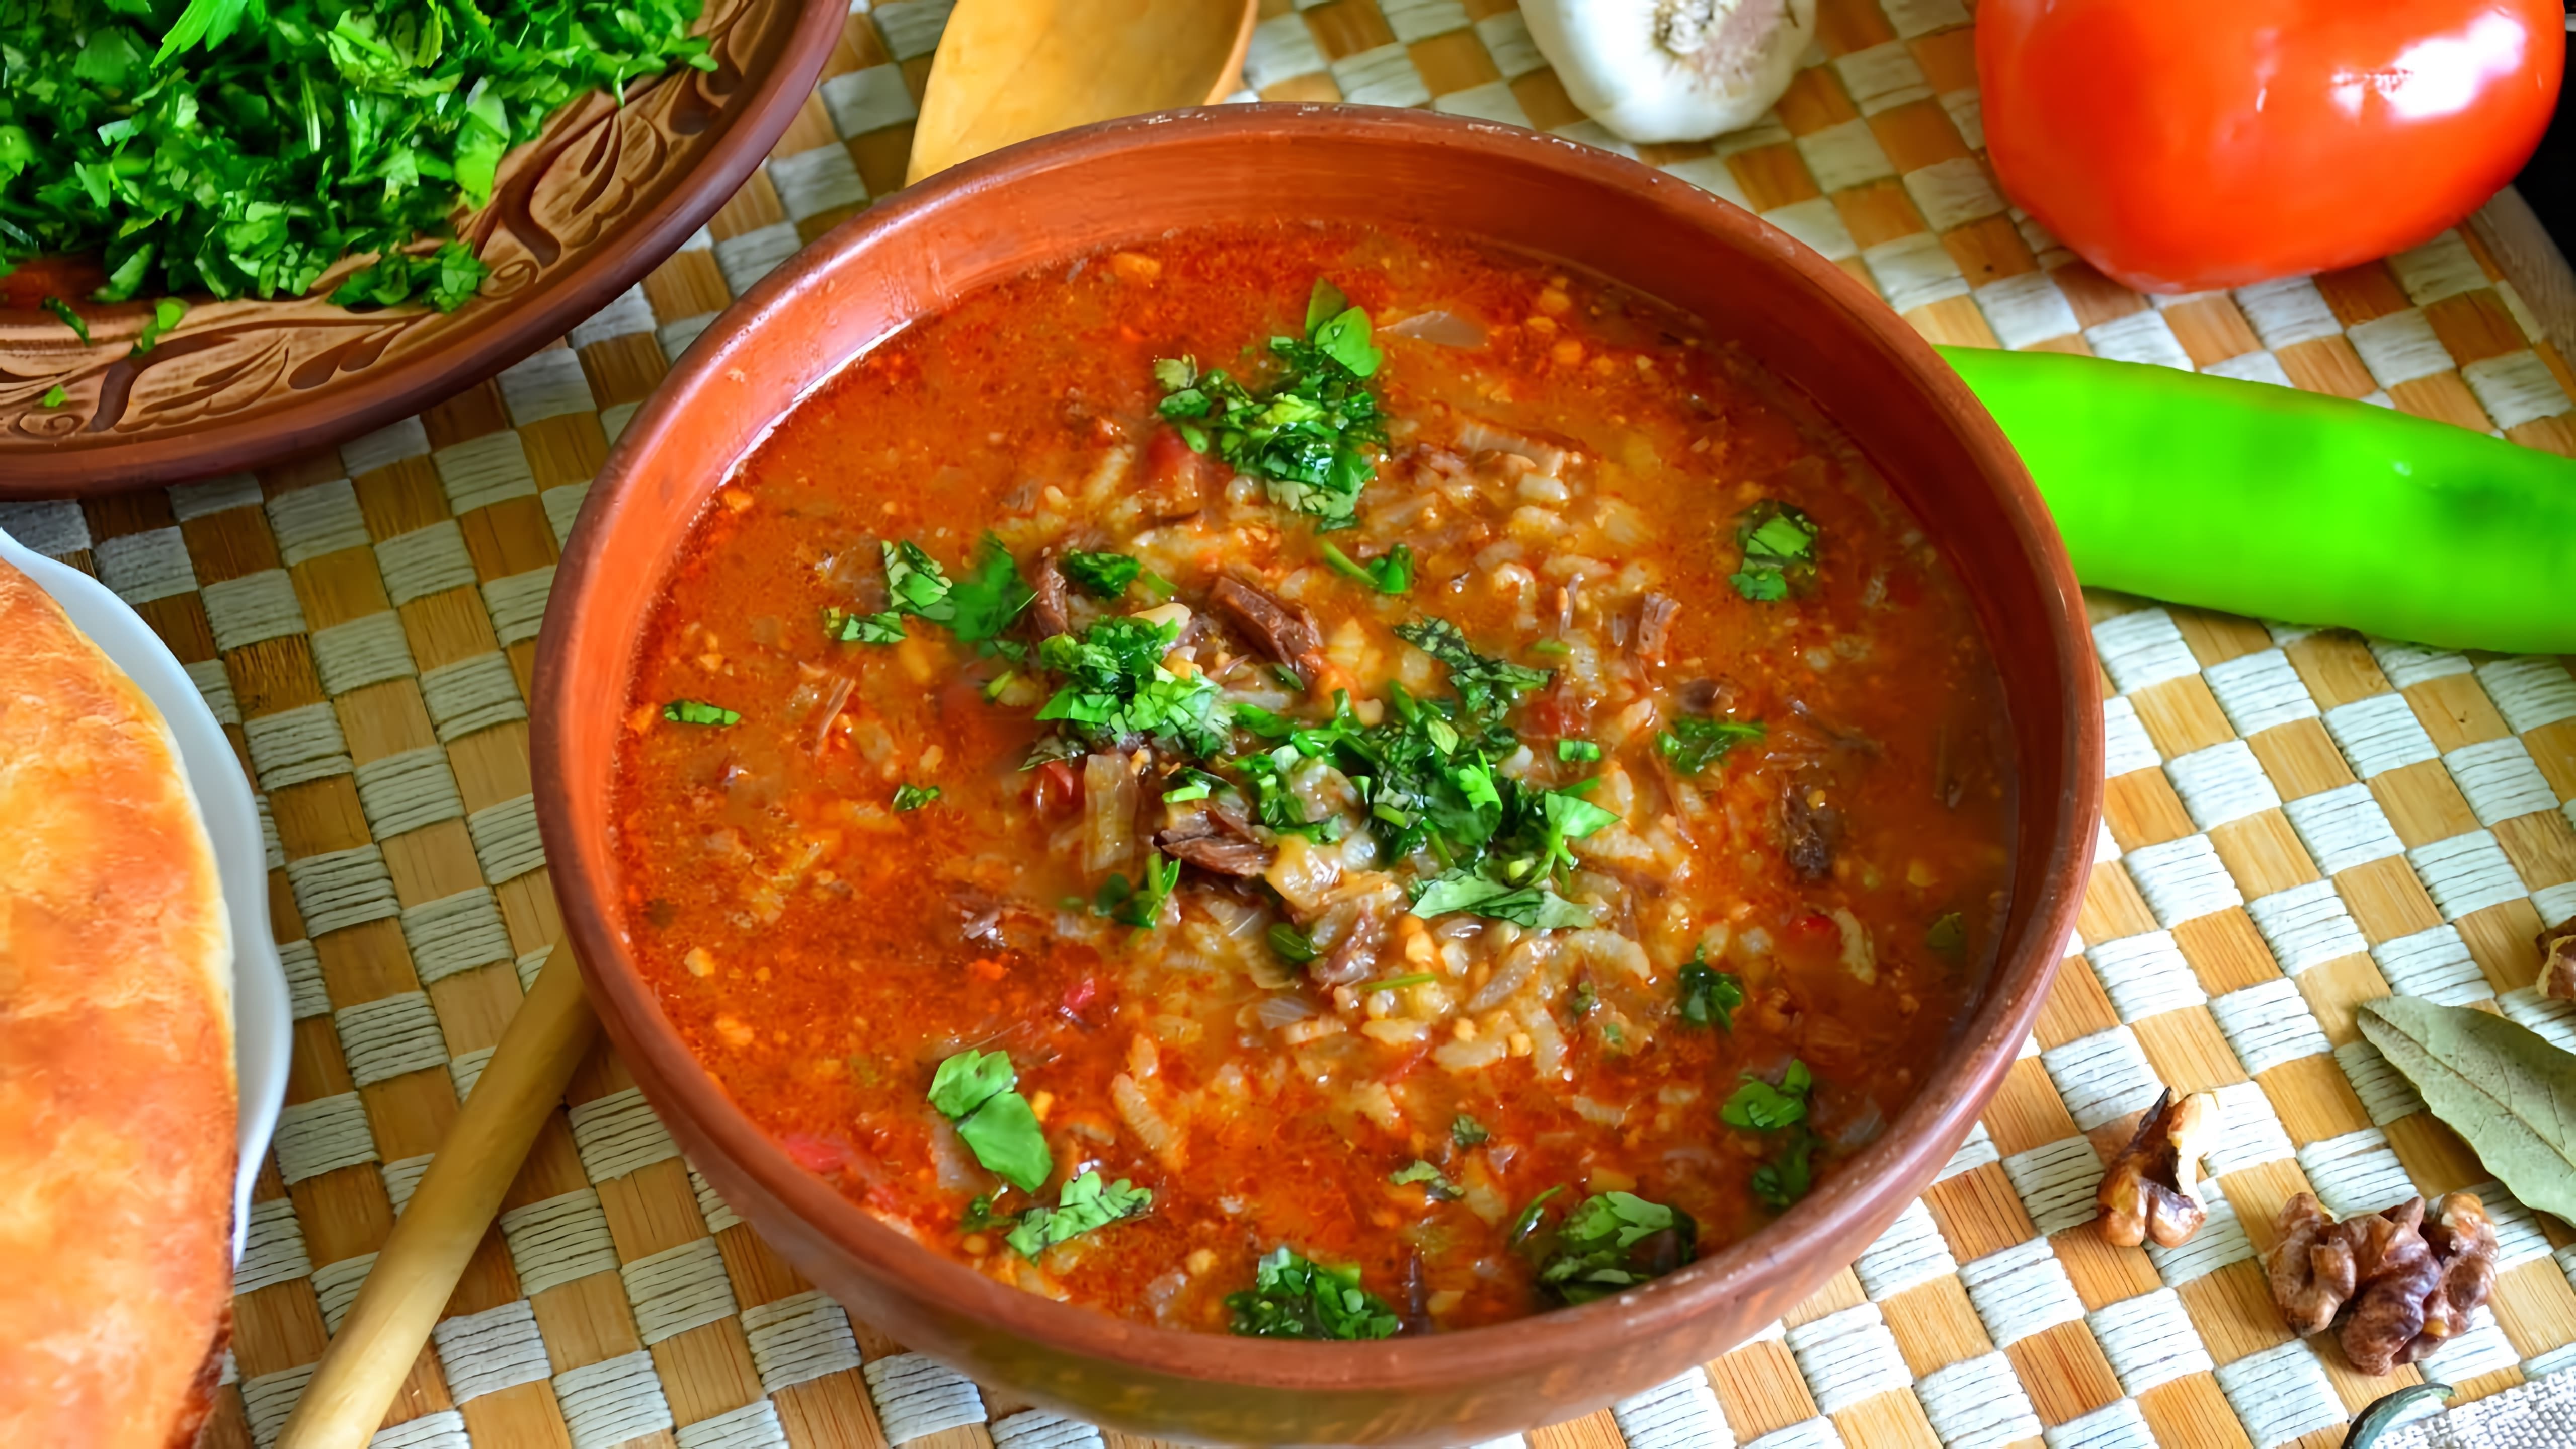 В этом видео демонстрируется рецепт приготовления классического грузинского супа харчо